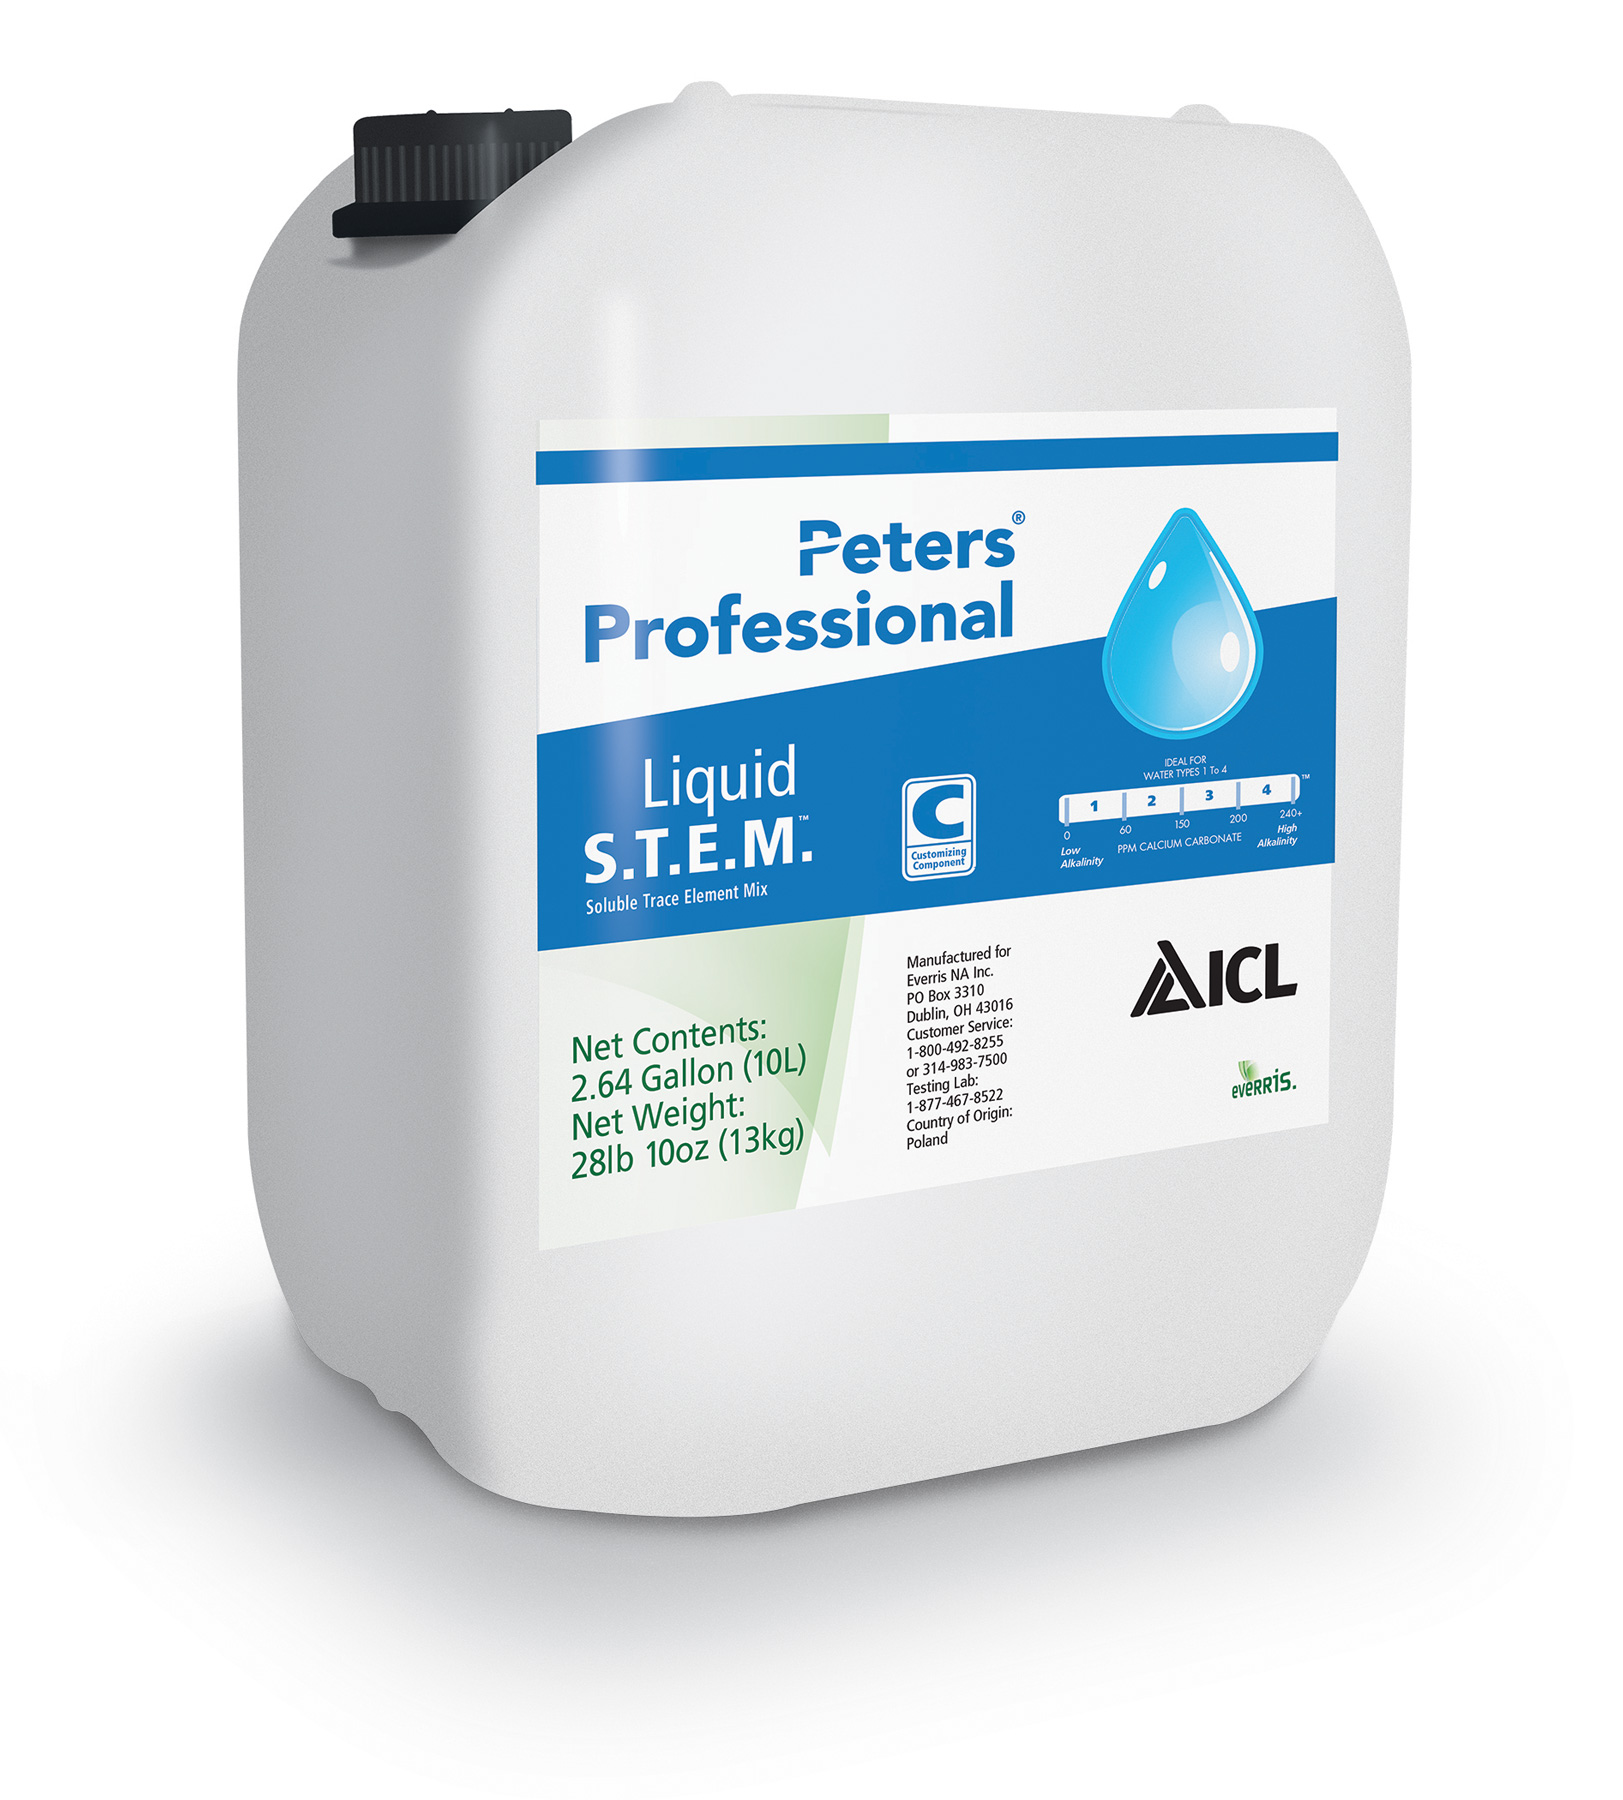 Peters Professional Liquid S.T.E.M. 2.64 Gallon Jug